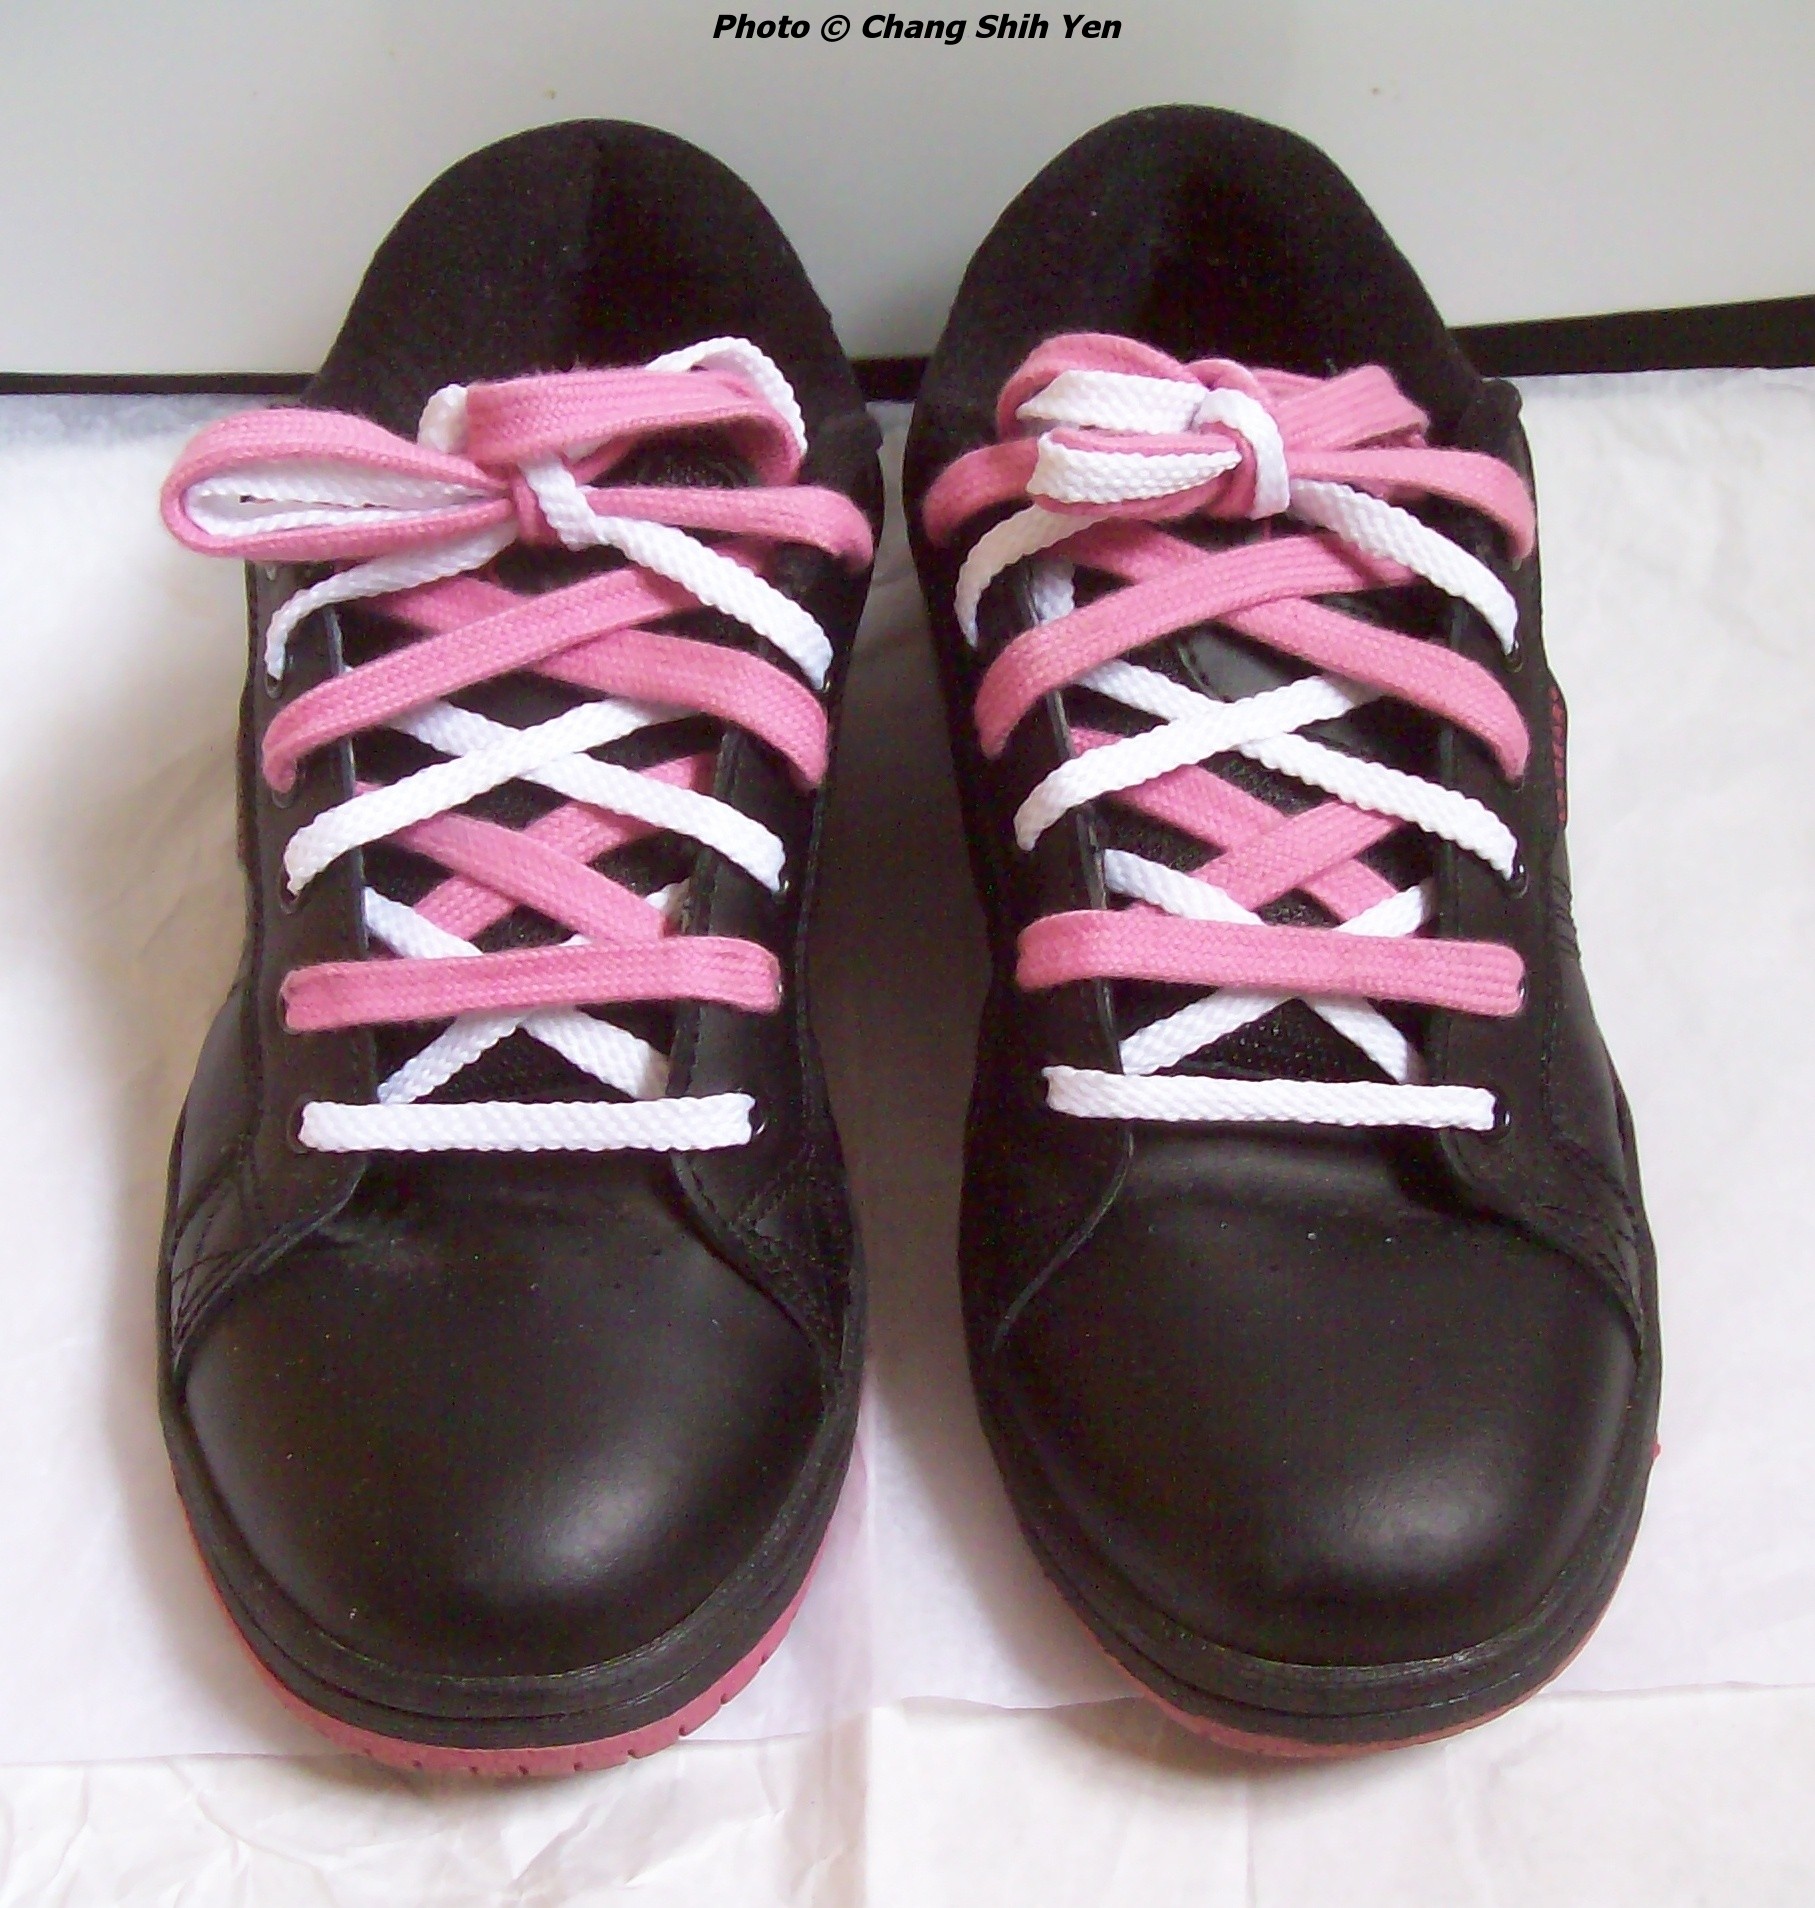 double shoe laces